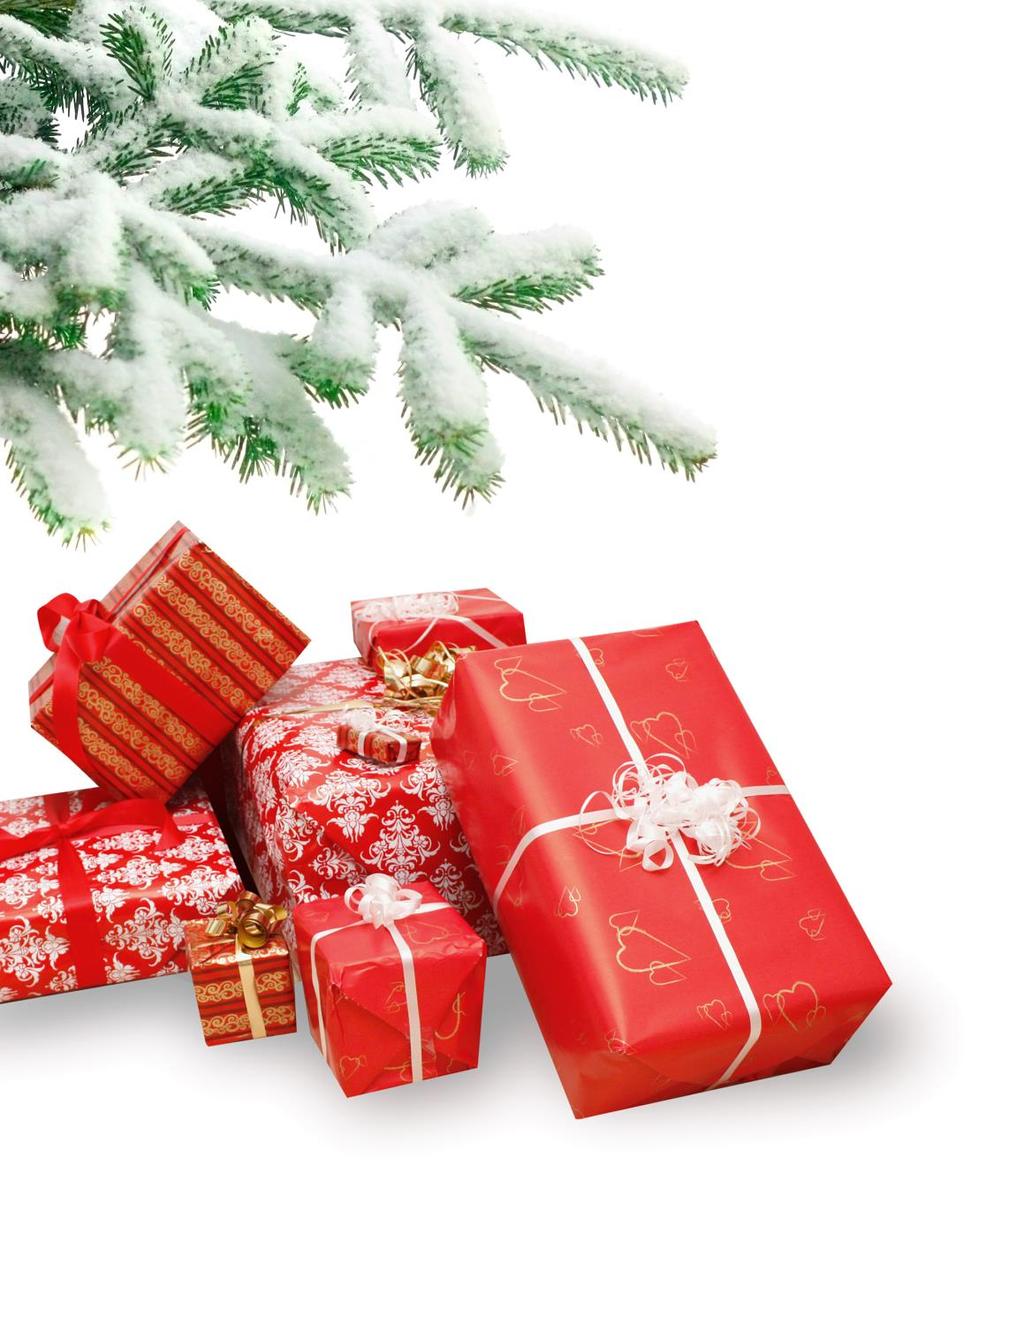 38 procent av julklapparna inköpta på internet Knappt 4 av tio av svenskarnas julklappsinköp sker på internet.